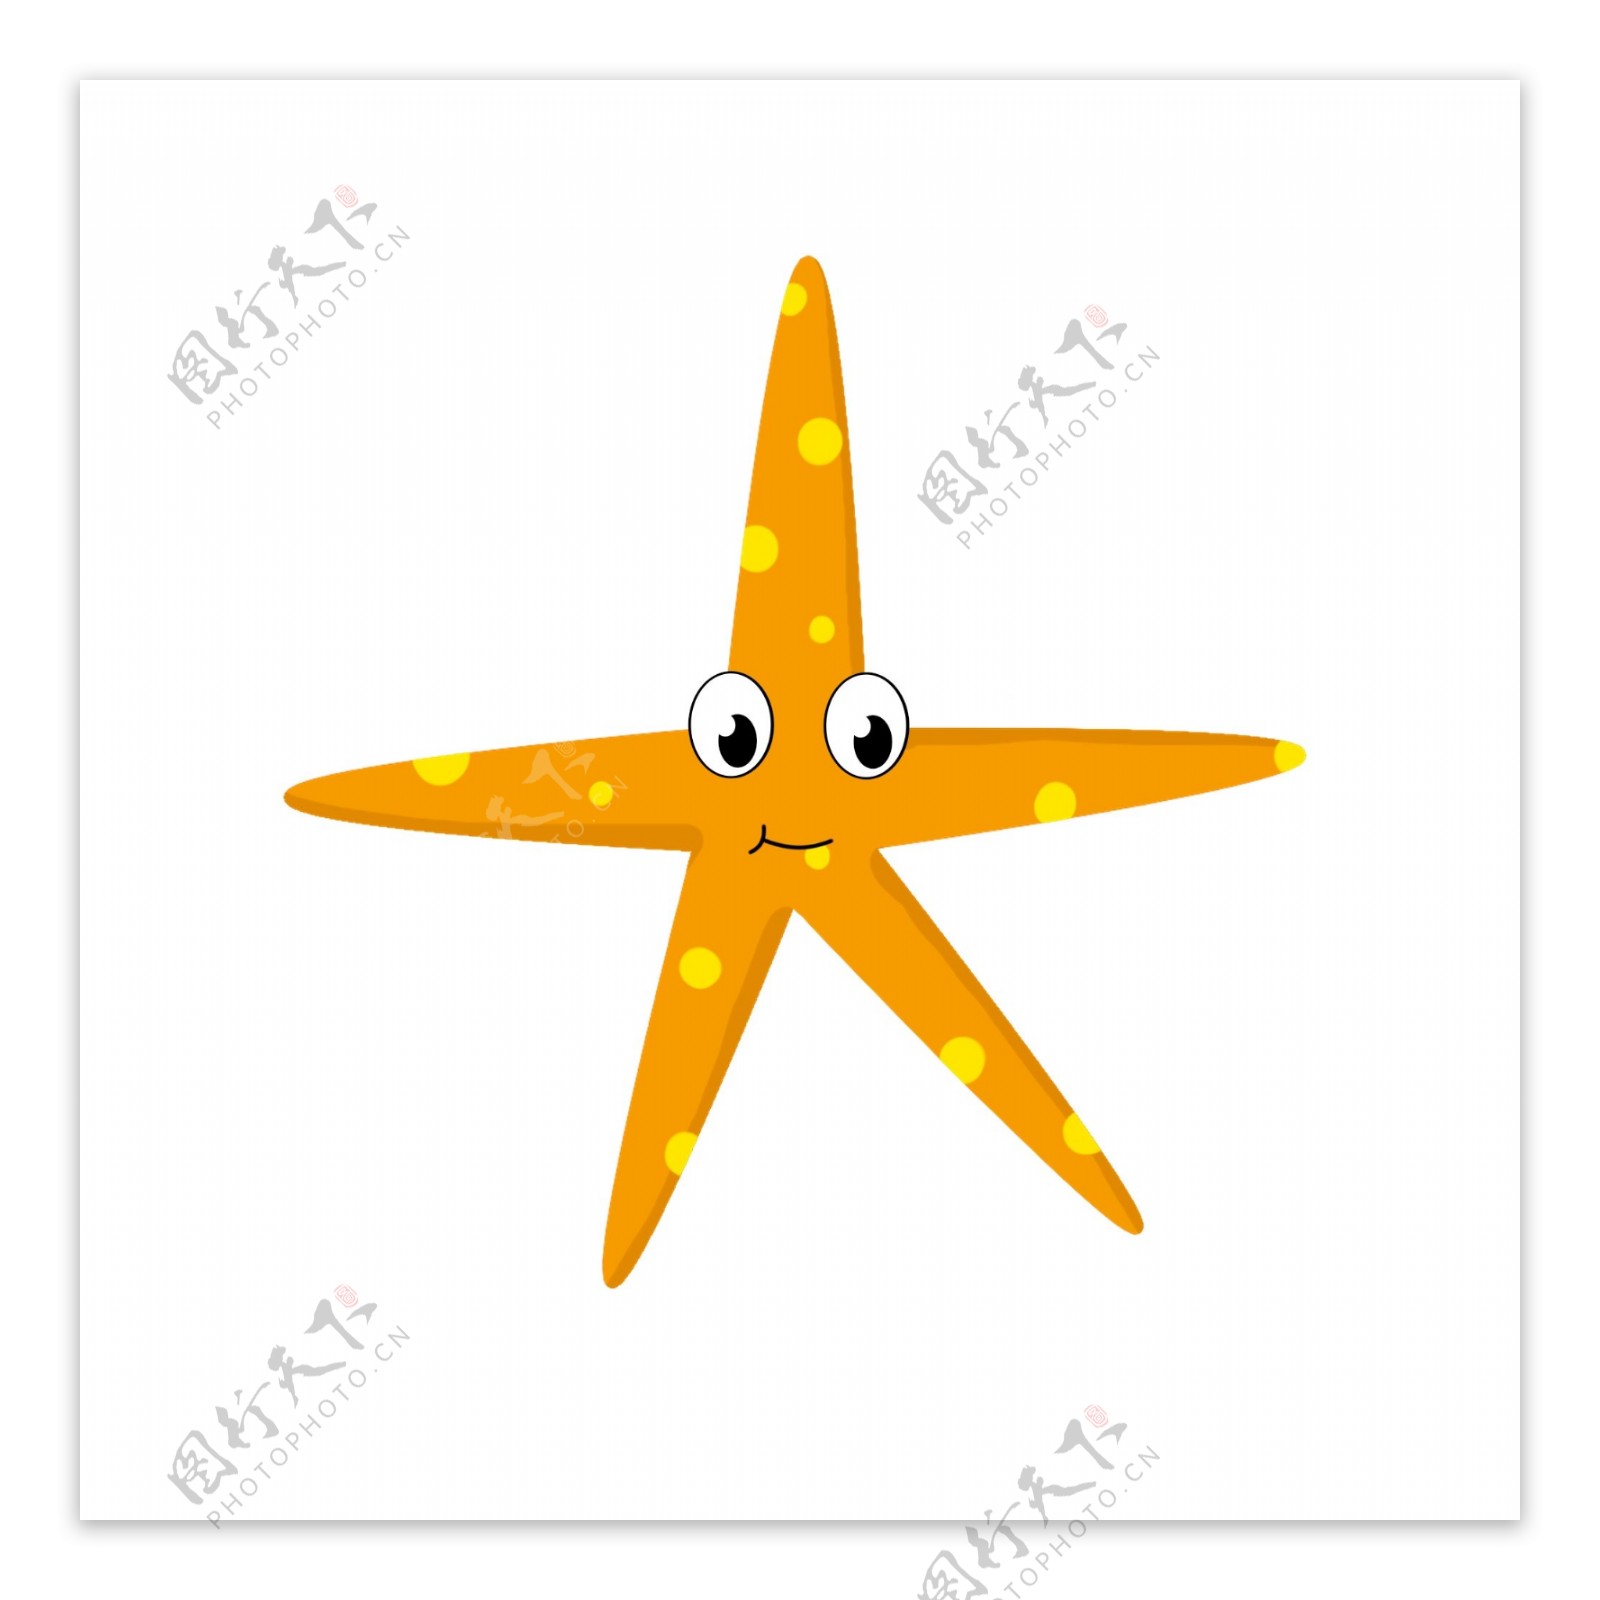 橙色海星